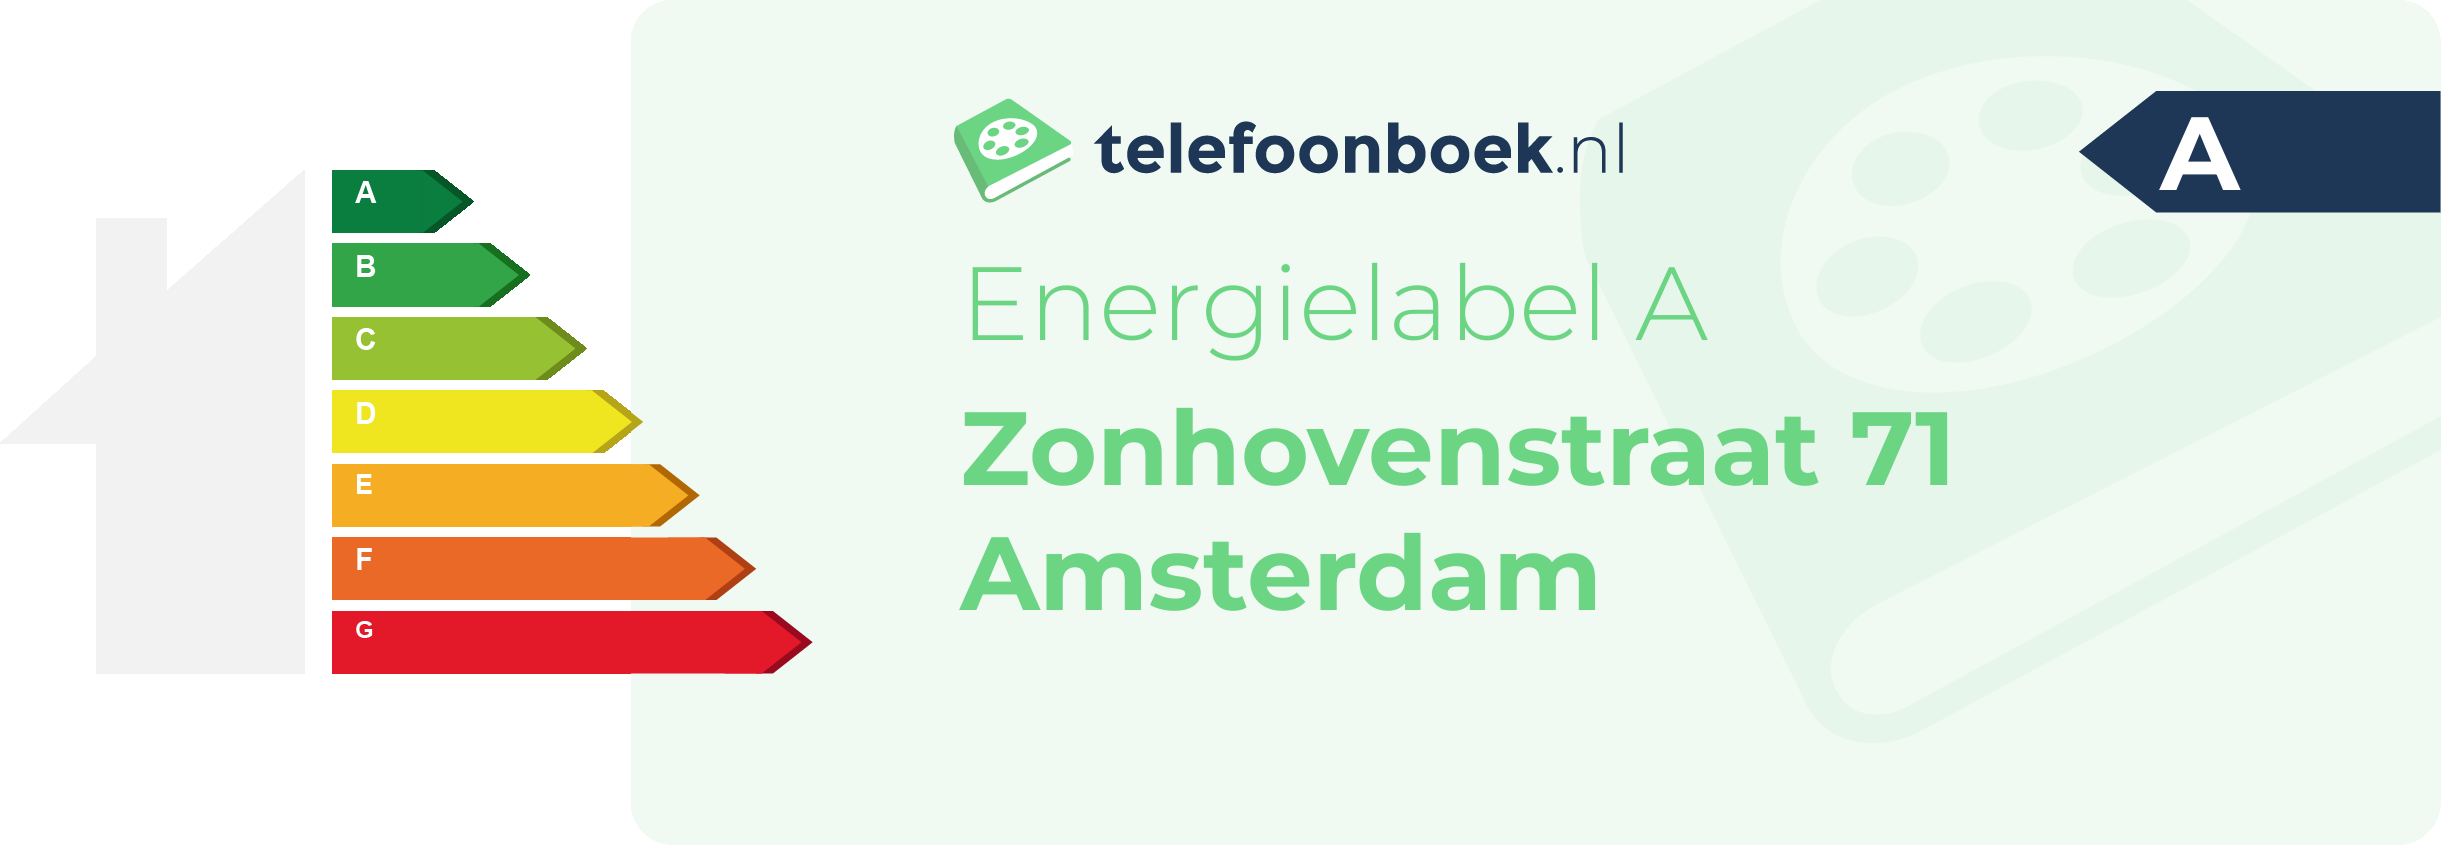 Energielabel Zonhovenstraat 71 Amsterdam